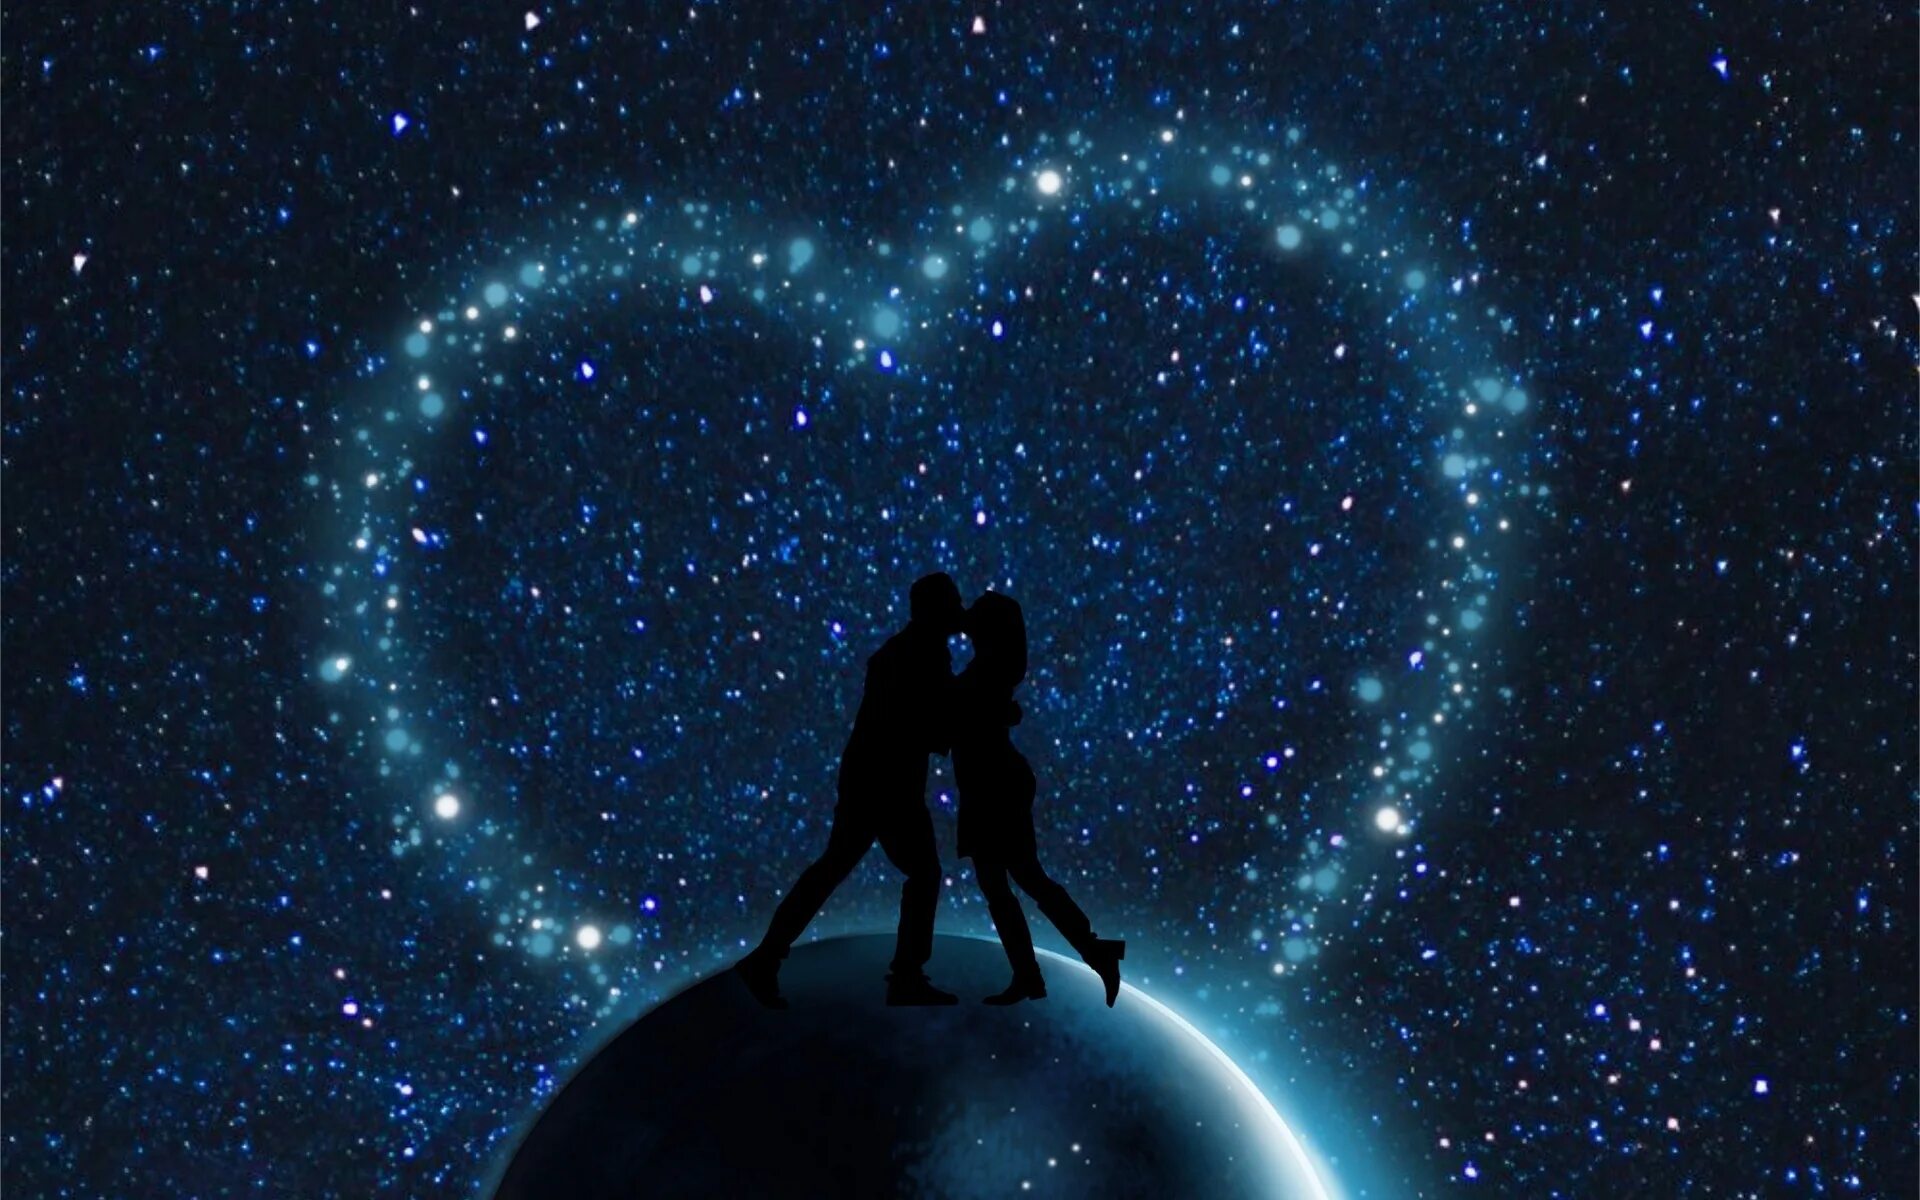 Будь моей звездой будь моей душой. Двое под звездами. Космос любовь. Пара на фоне звездного неба. Вселенная и любовь.